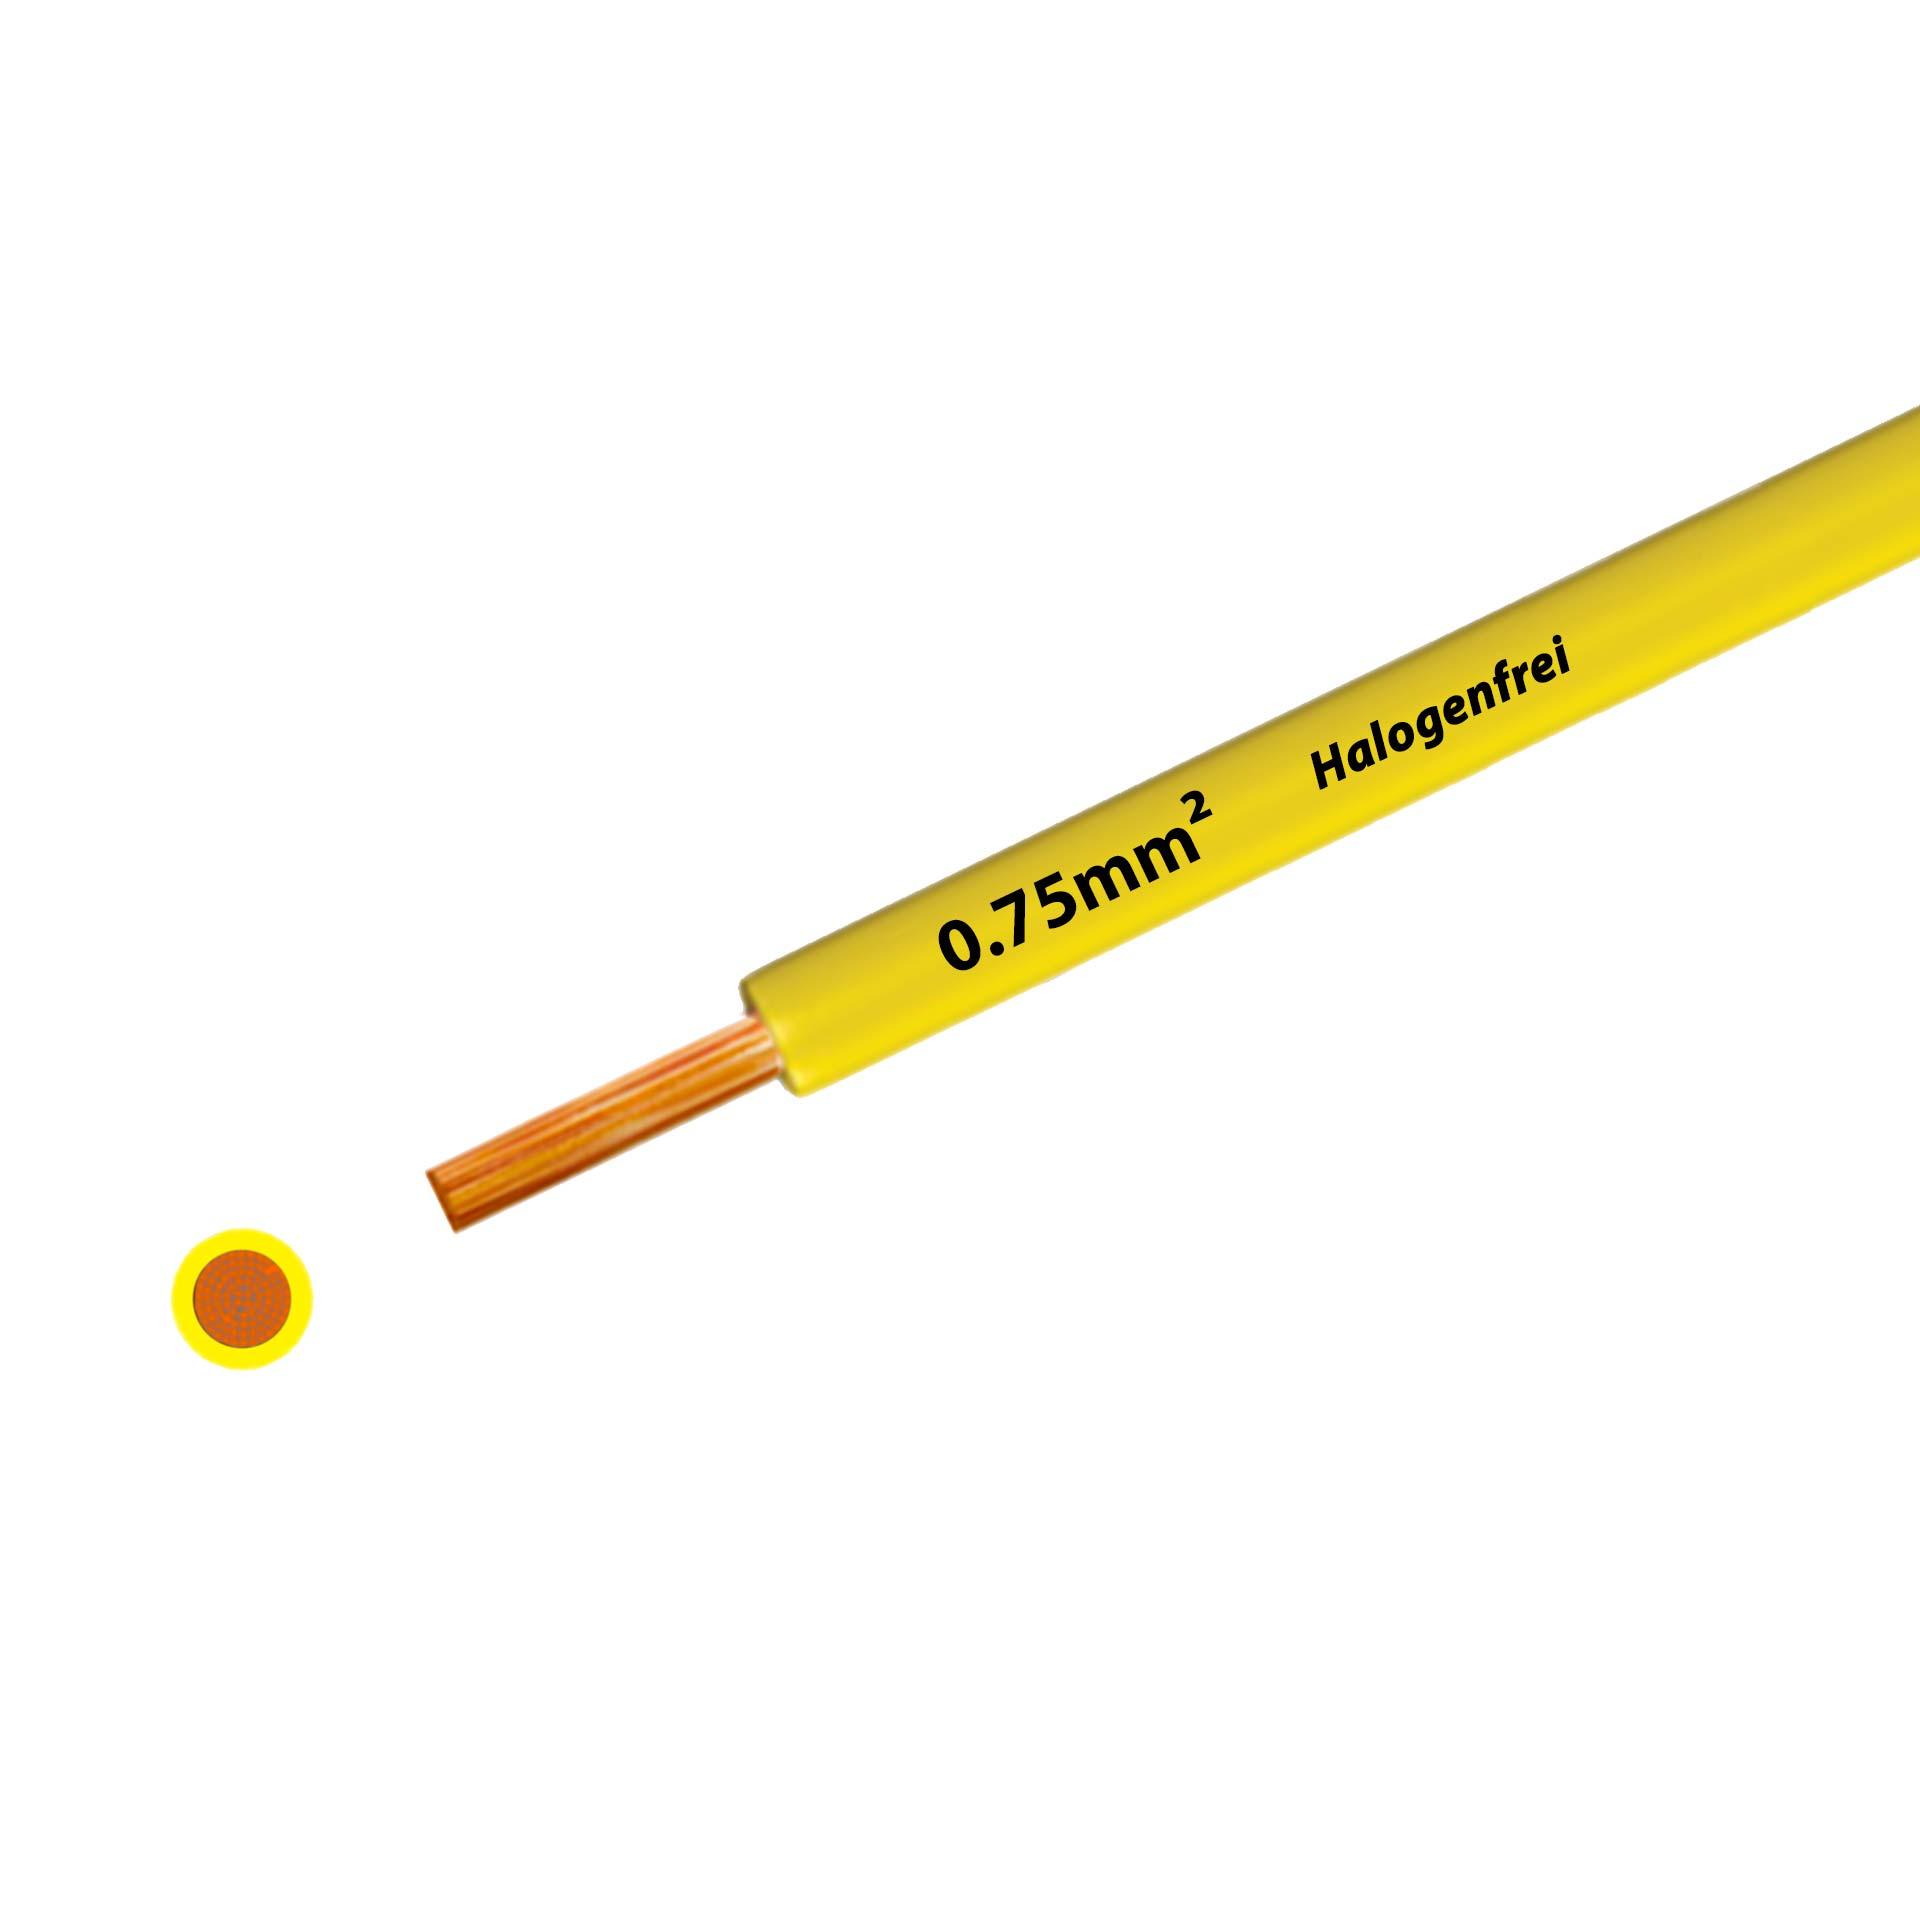 Litze halogenfrei 90° C , 500V, 0.75 mm2, gelb (RAL 1021), auf Kunststoffrolle